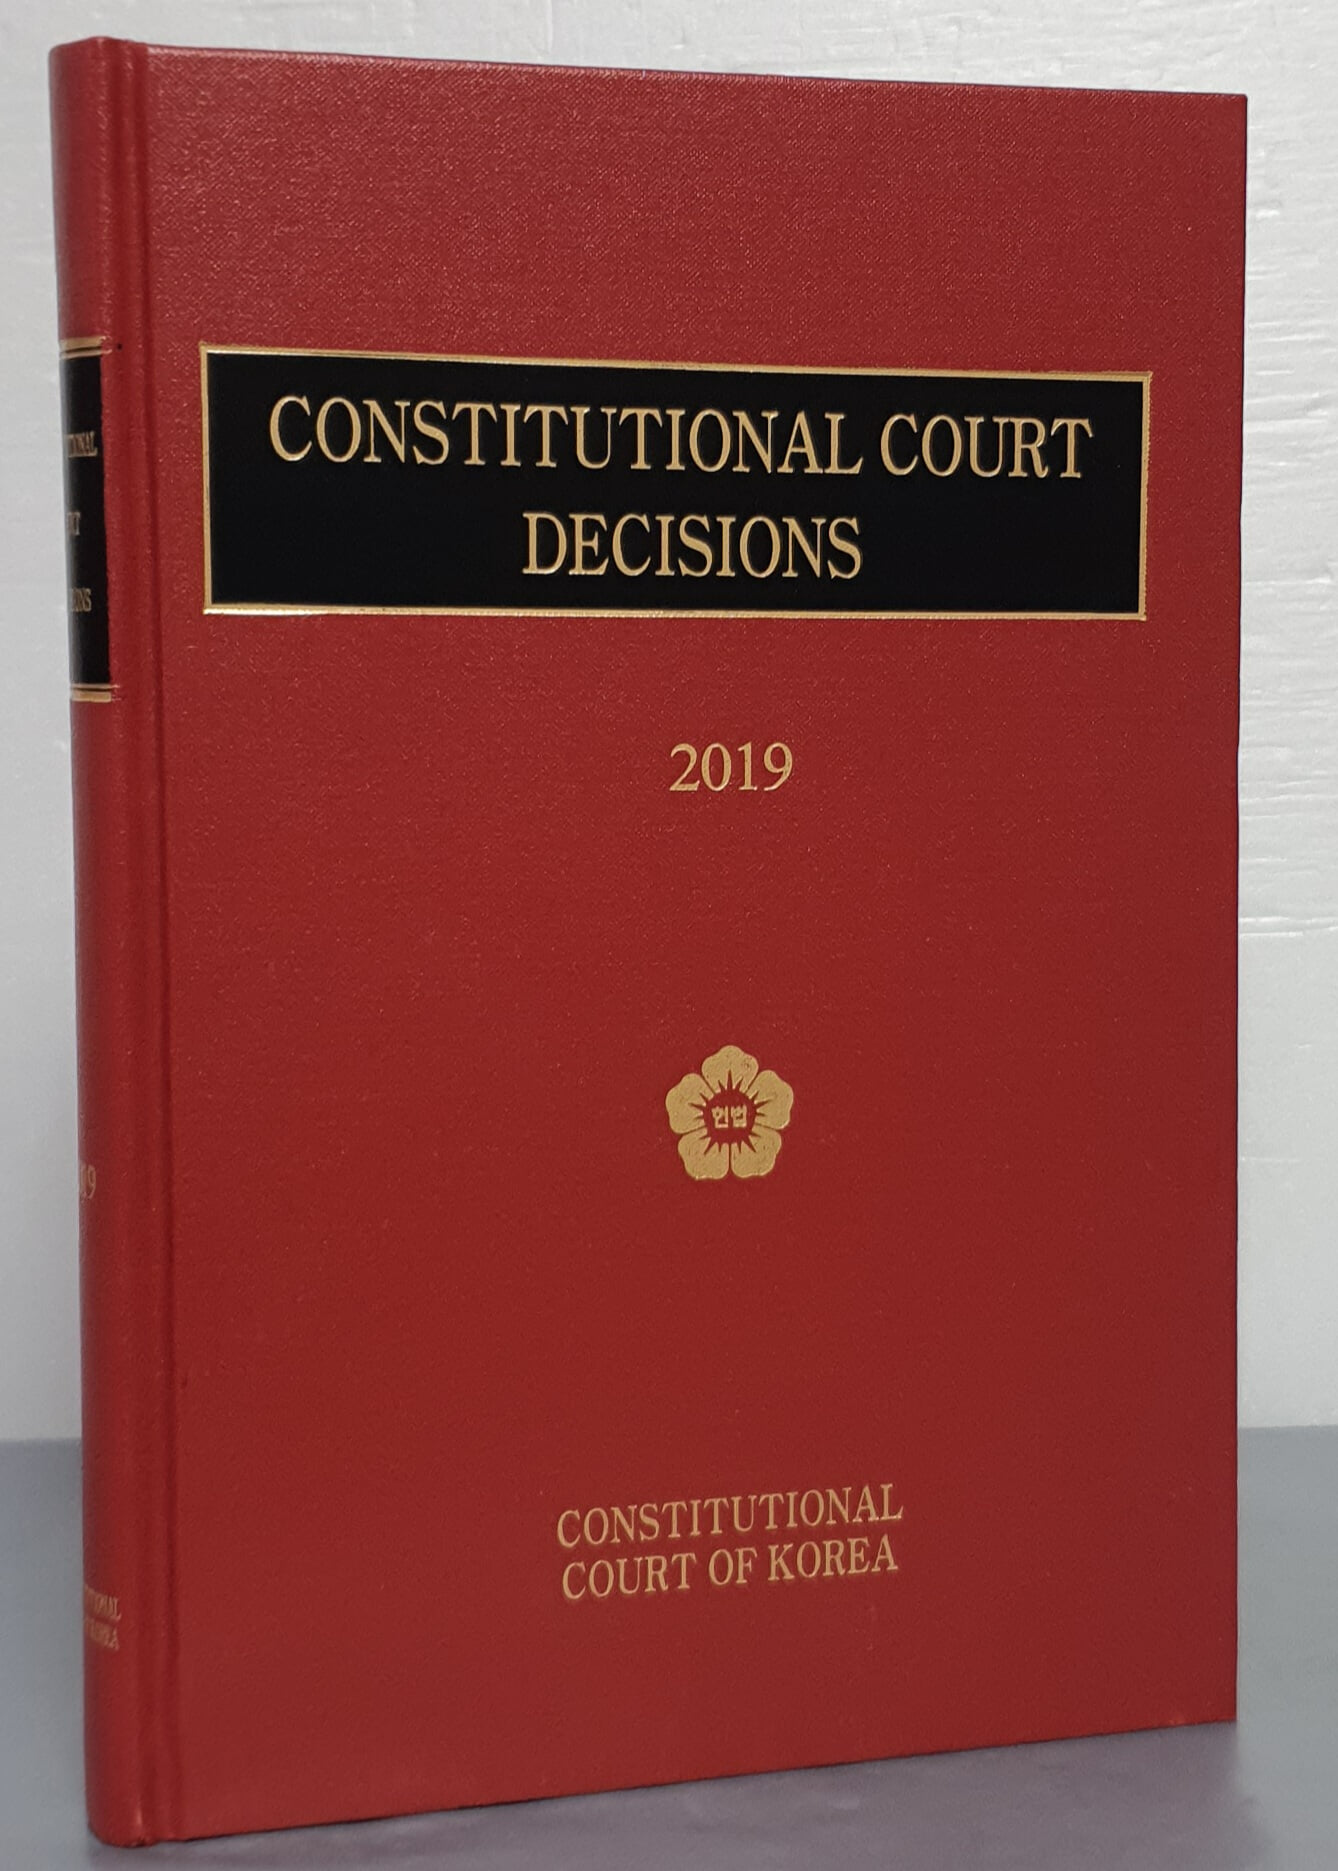 CONSTITUTIONAL COURT DECISIONS 2019